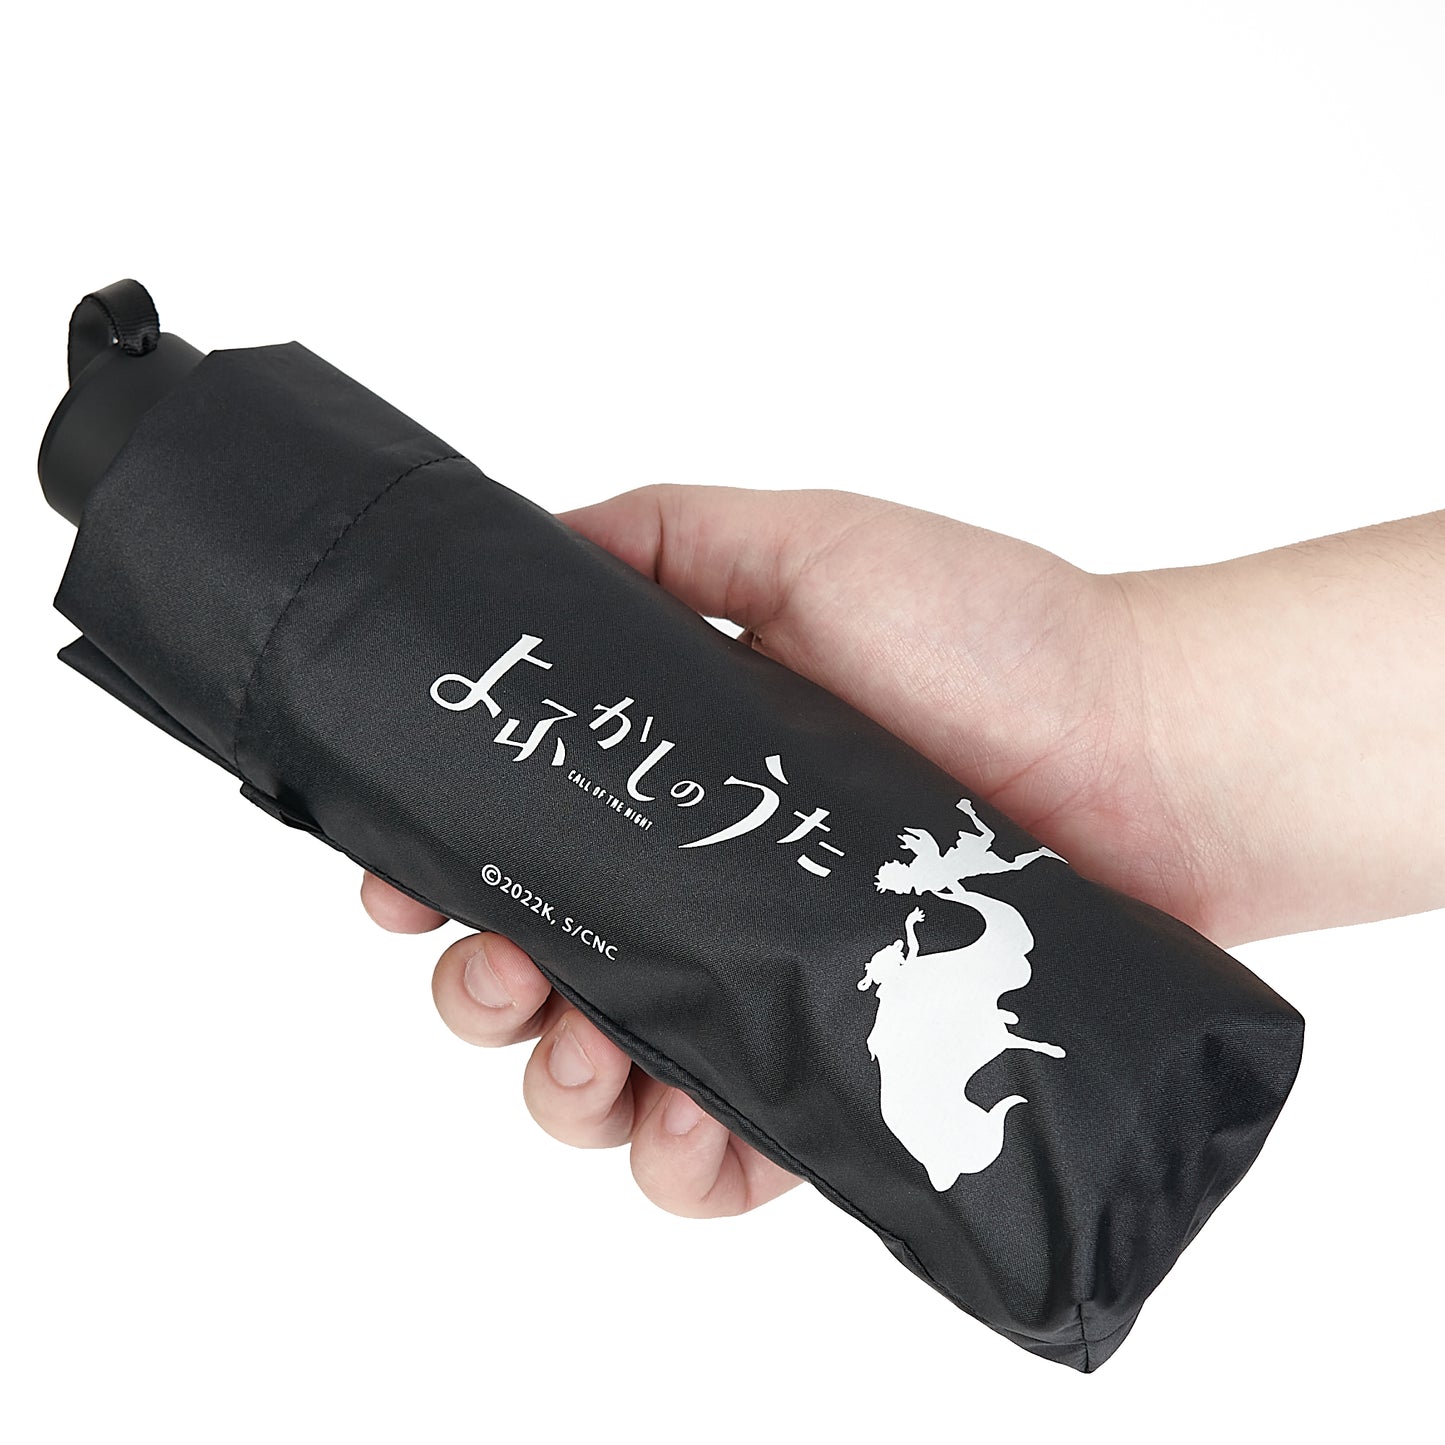 『よふかしのうた』UVカット機能付晴雨兼用折りたたみ傘【予約商品】